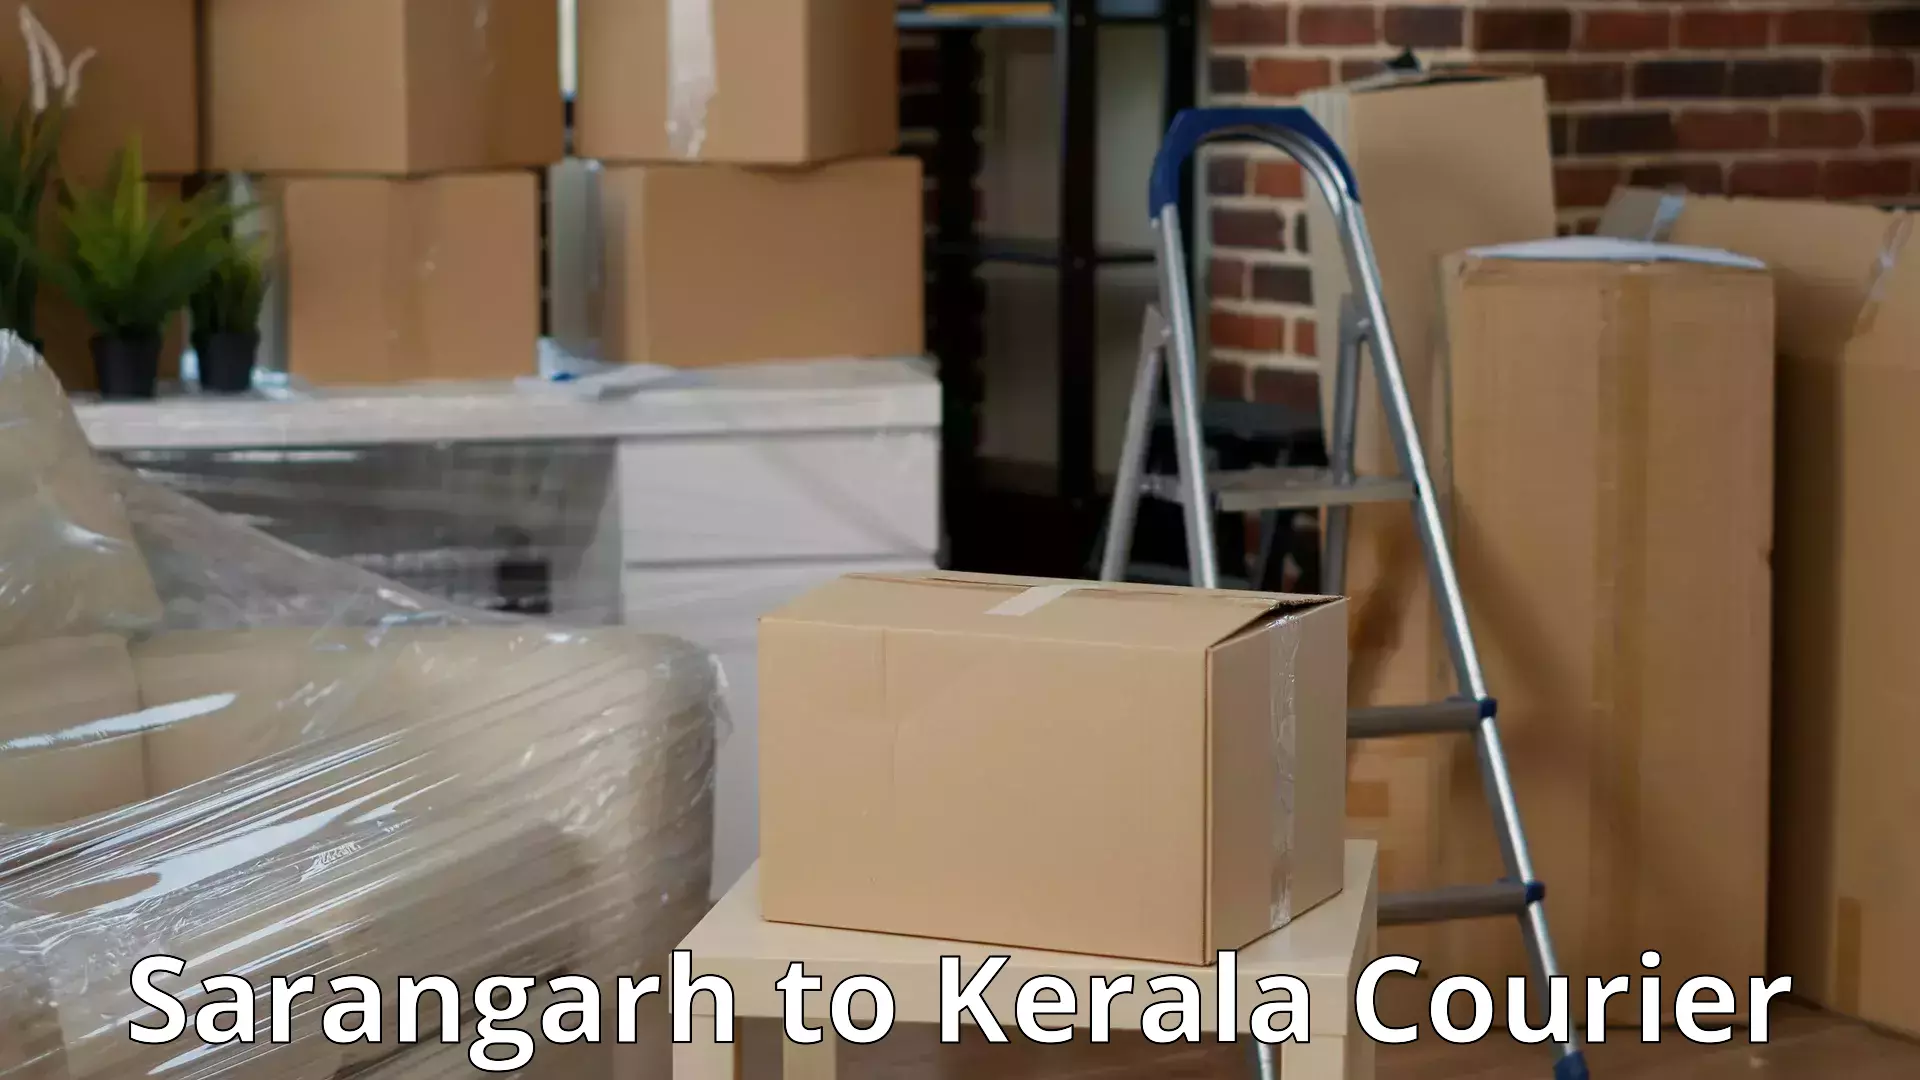 Furniture moving experts Sarangarh to Chengannur